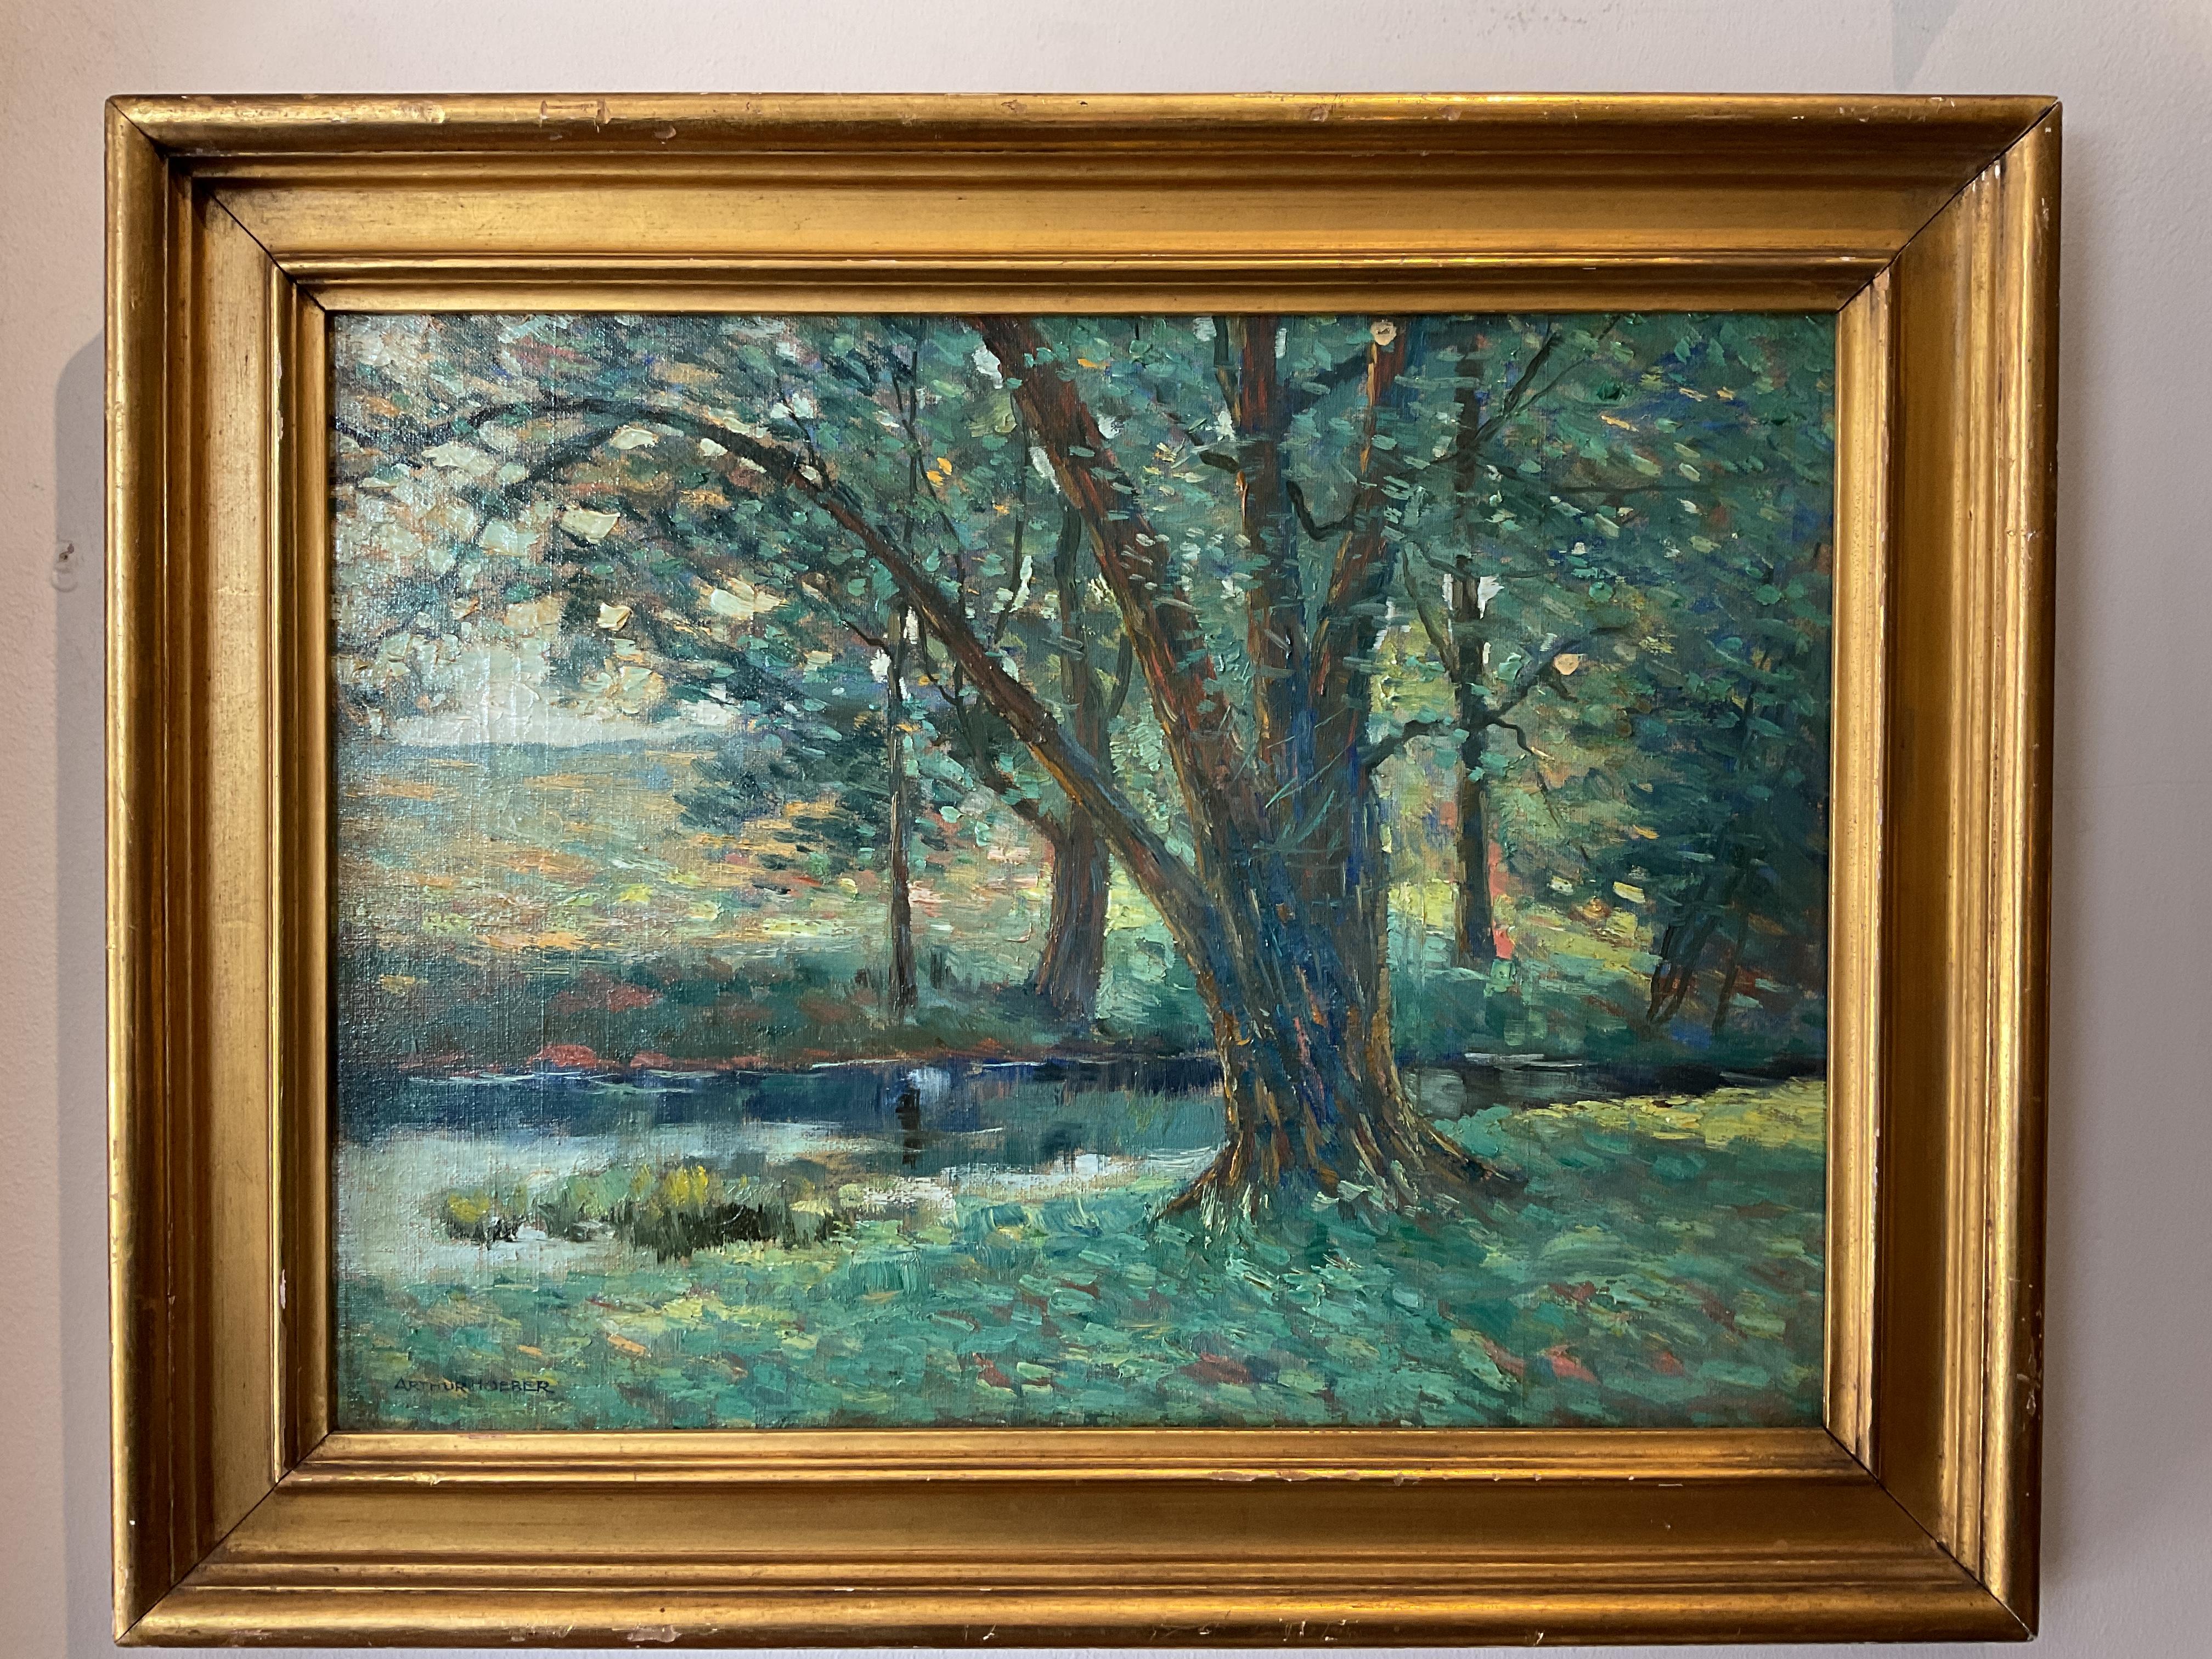 Peinture de paysage impressionniste américaine ancienne Willow d'Arthur Hoeber